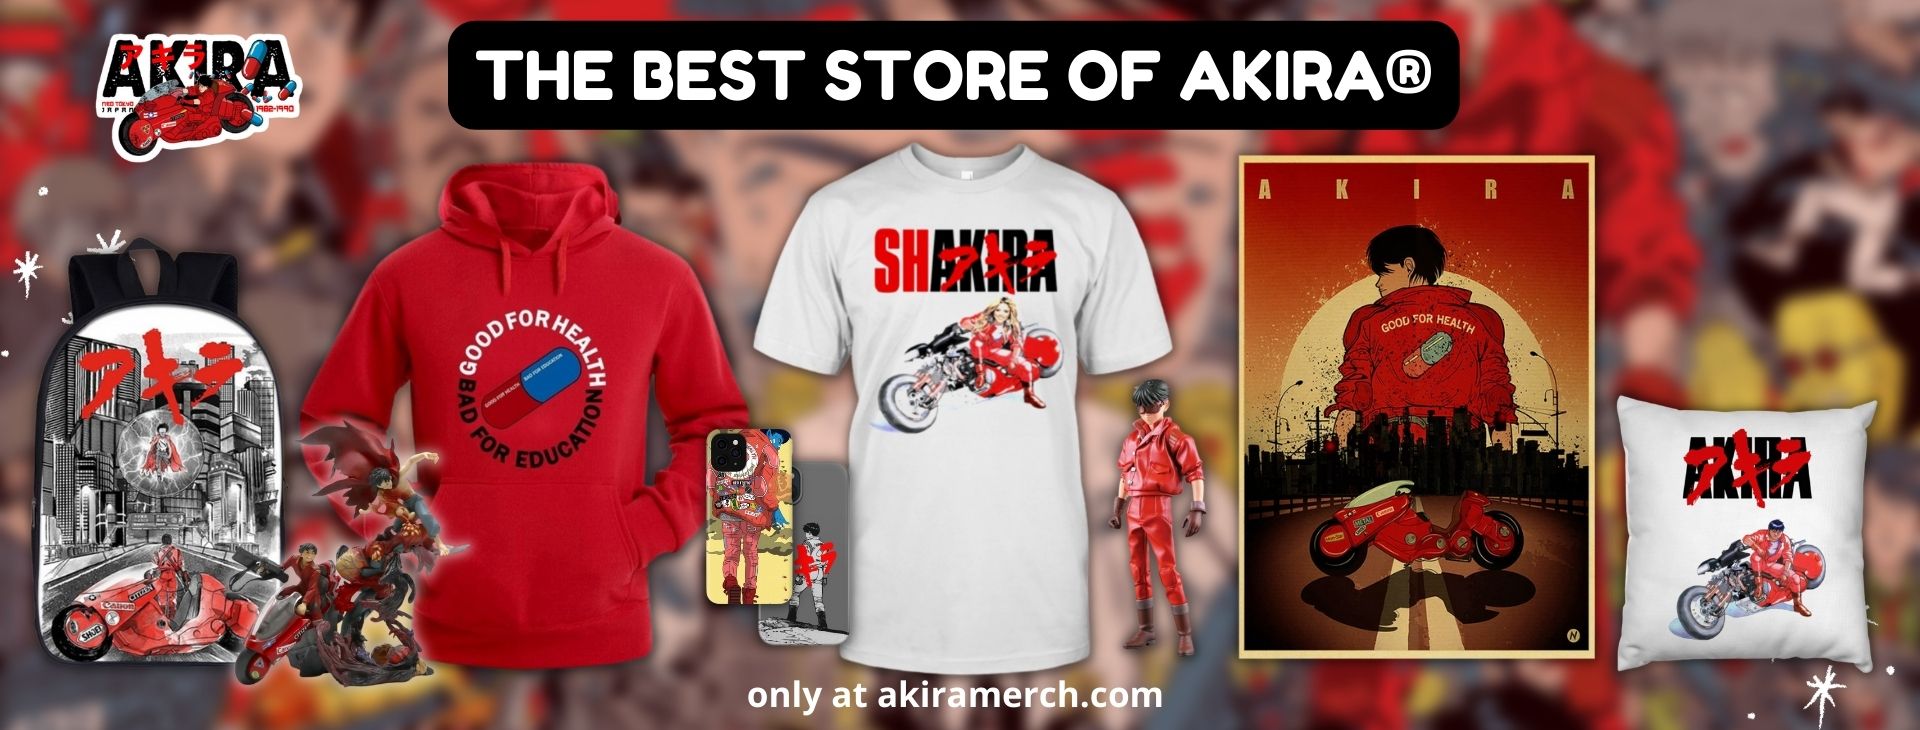 Akira Store Banner - Akira Merch